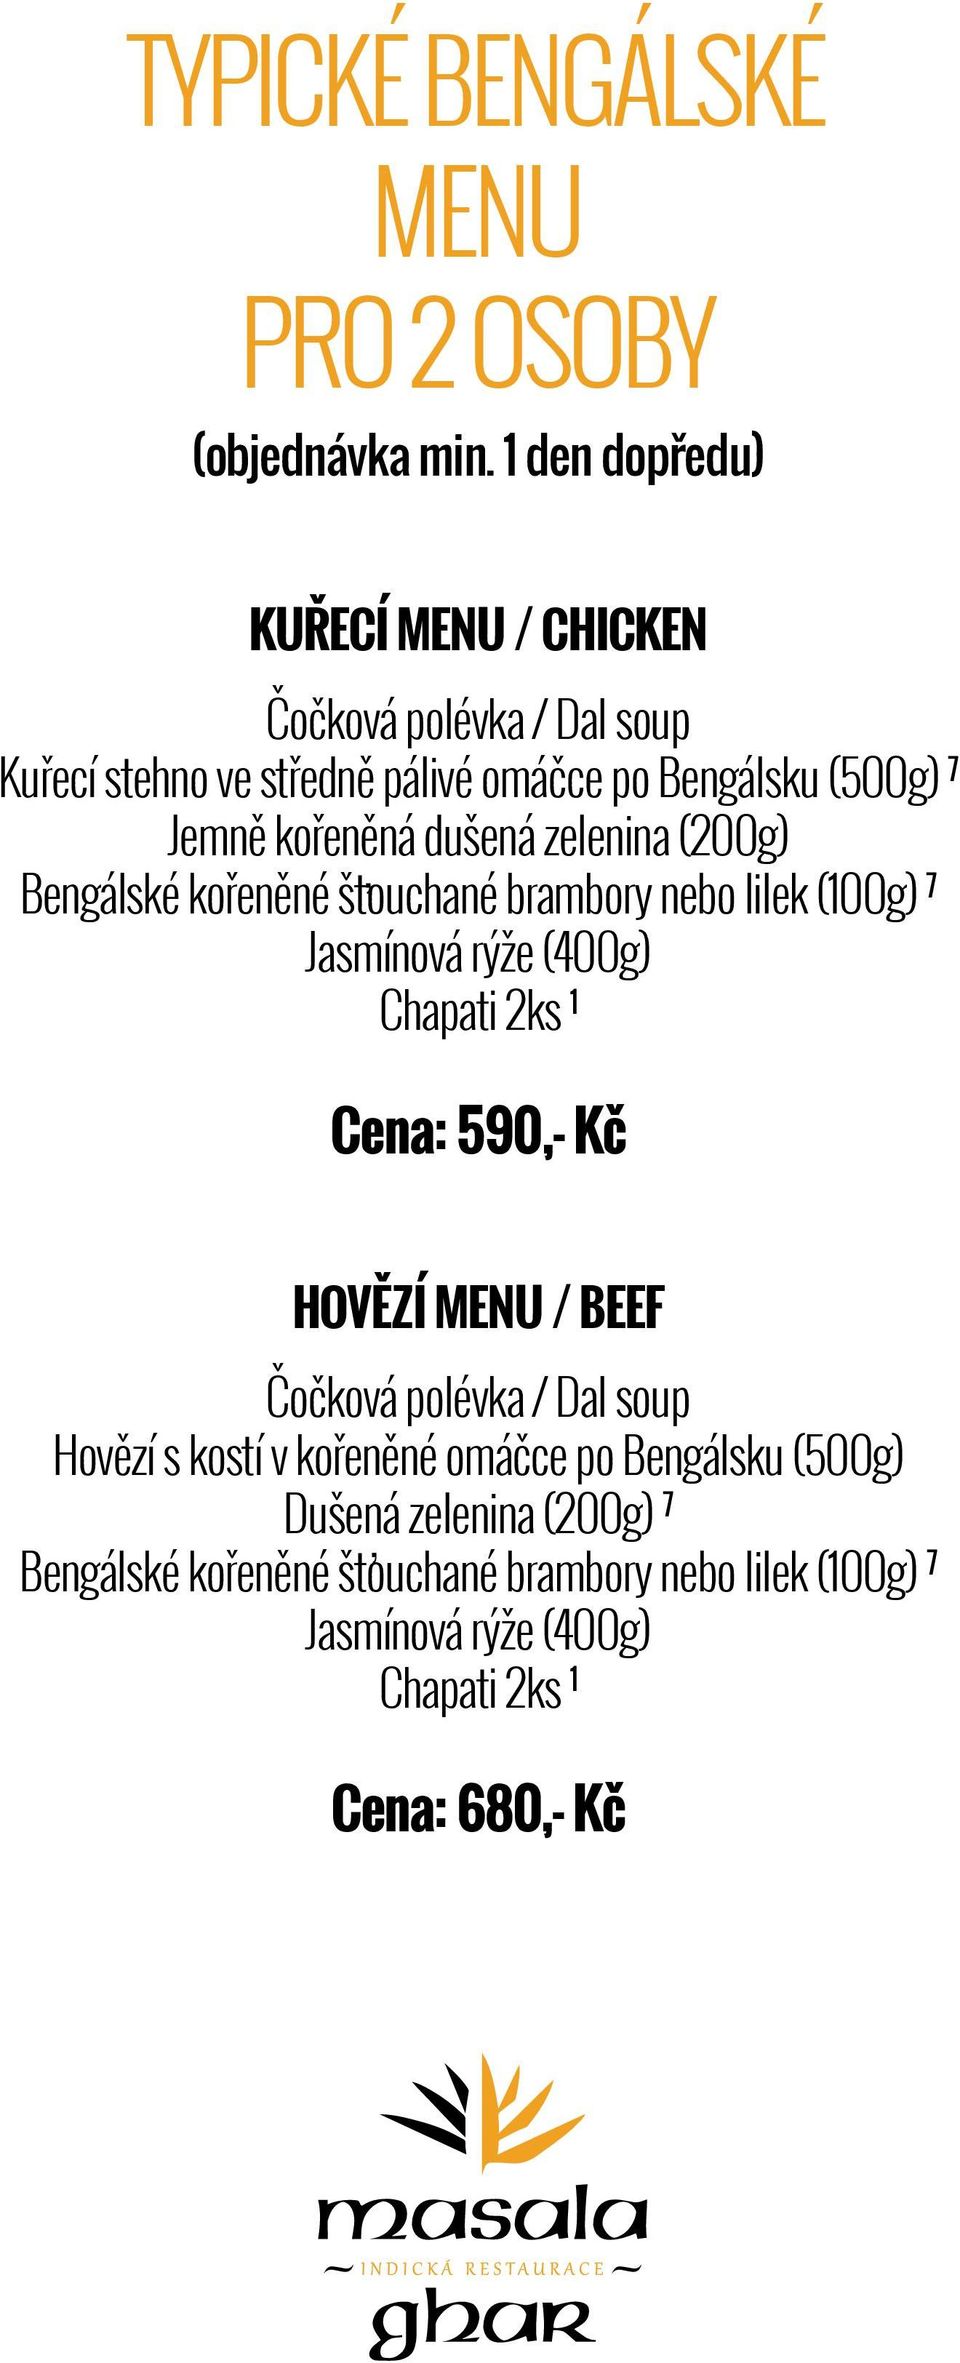 kořeněná dušená zelenina (200g) Bengálské kořeněné štouchané brambory nebo lilek (100g) 7 Jasmínová rýže (400g) Chapati 2ks 1 Cena: 590,-